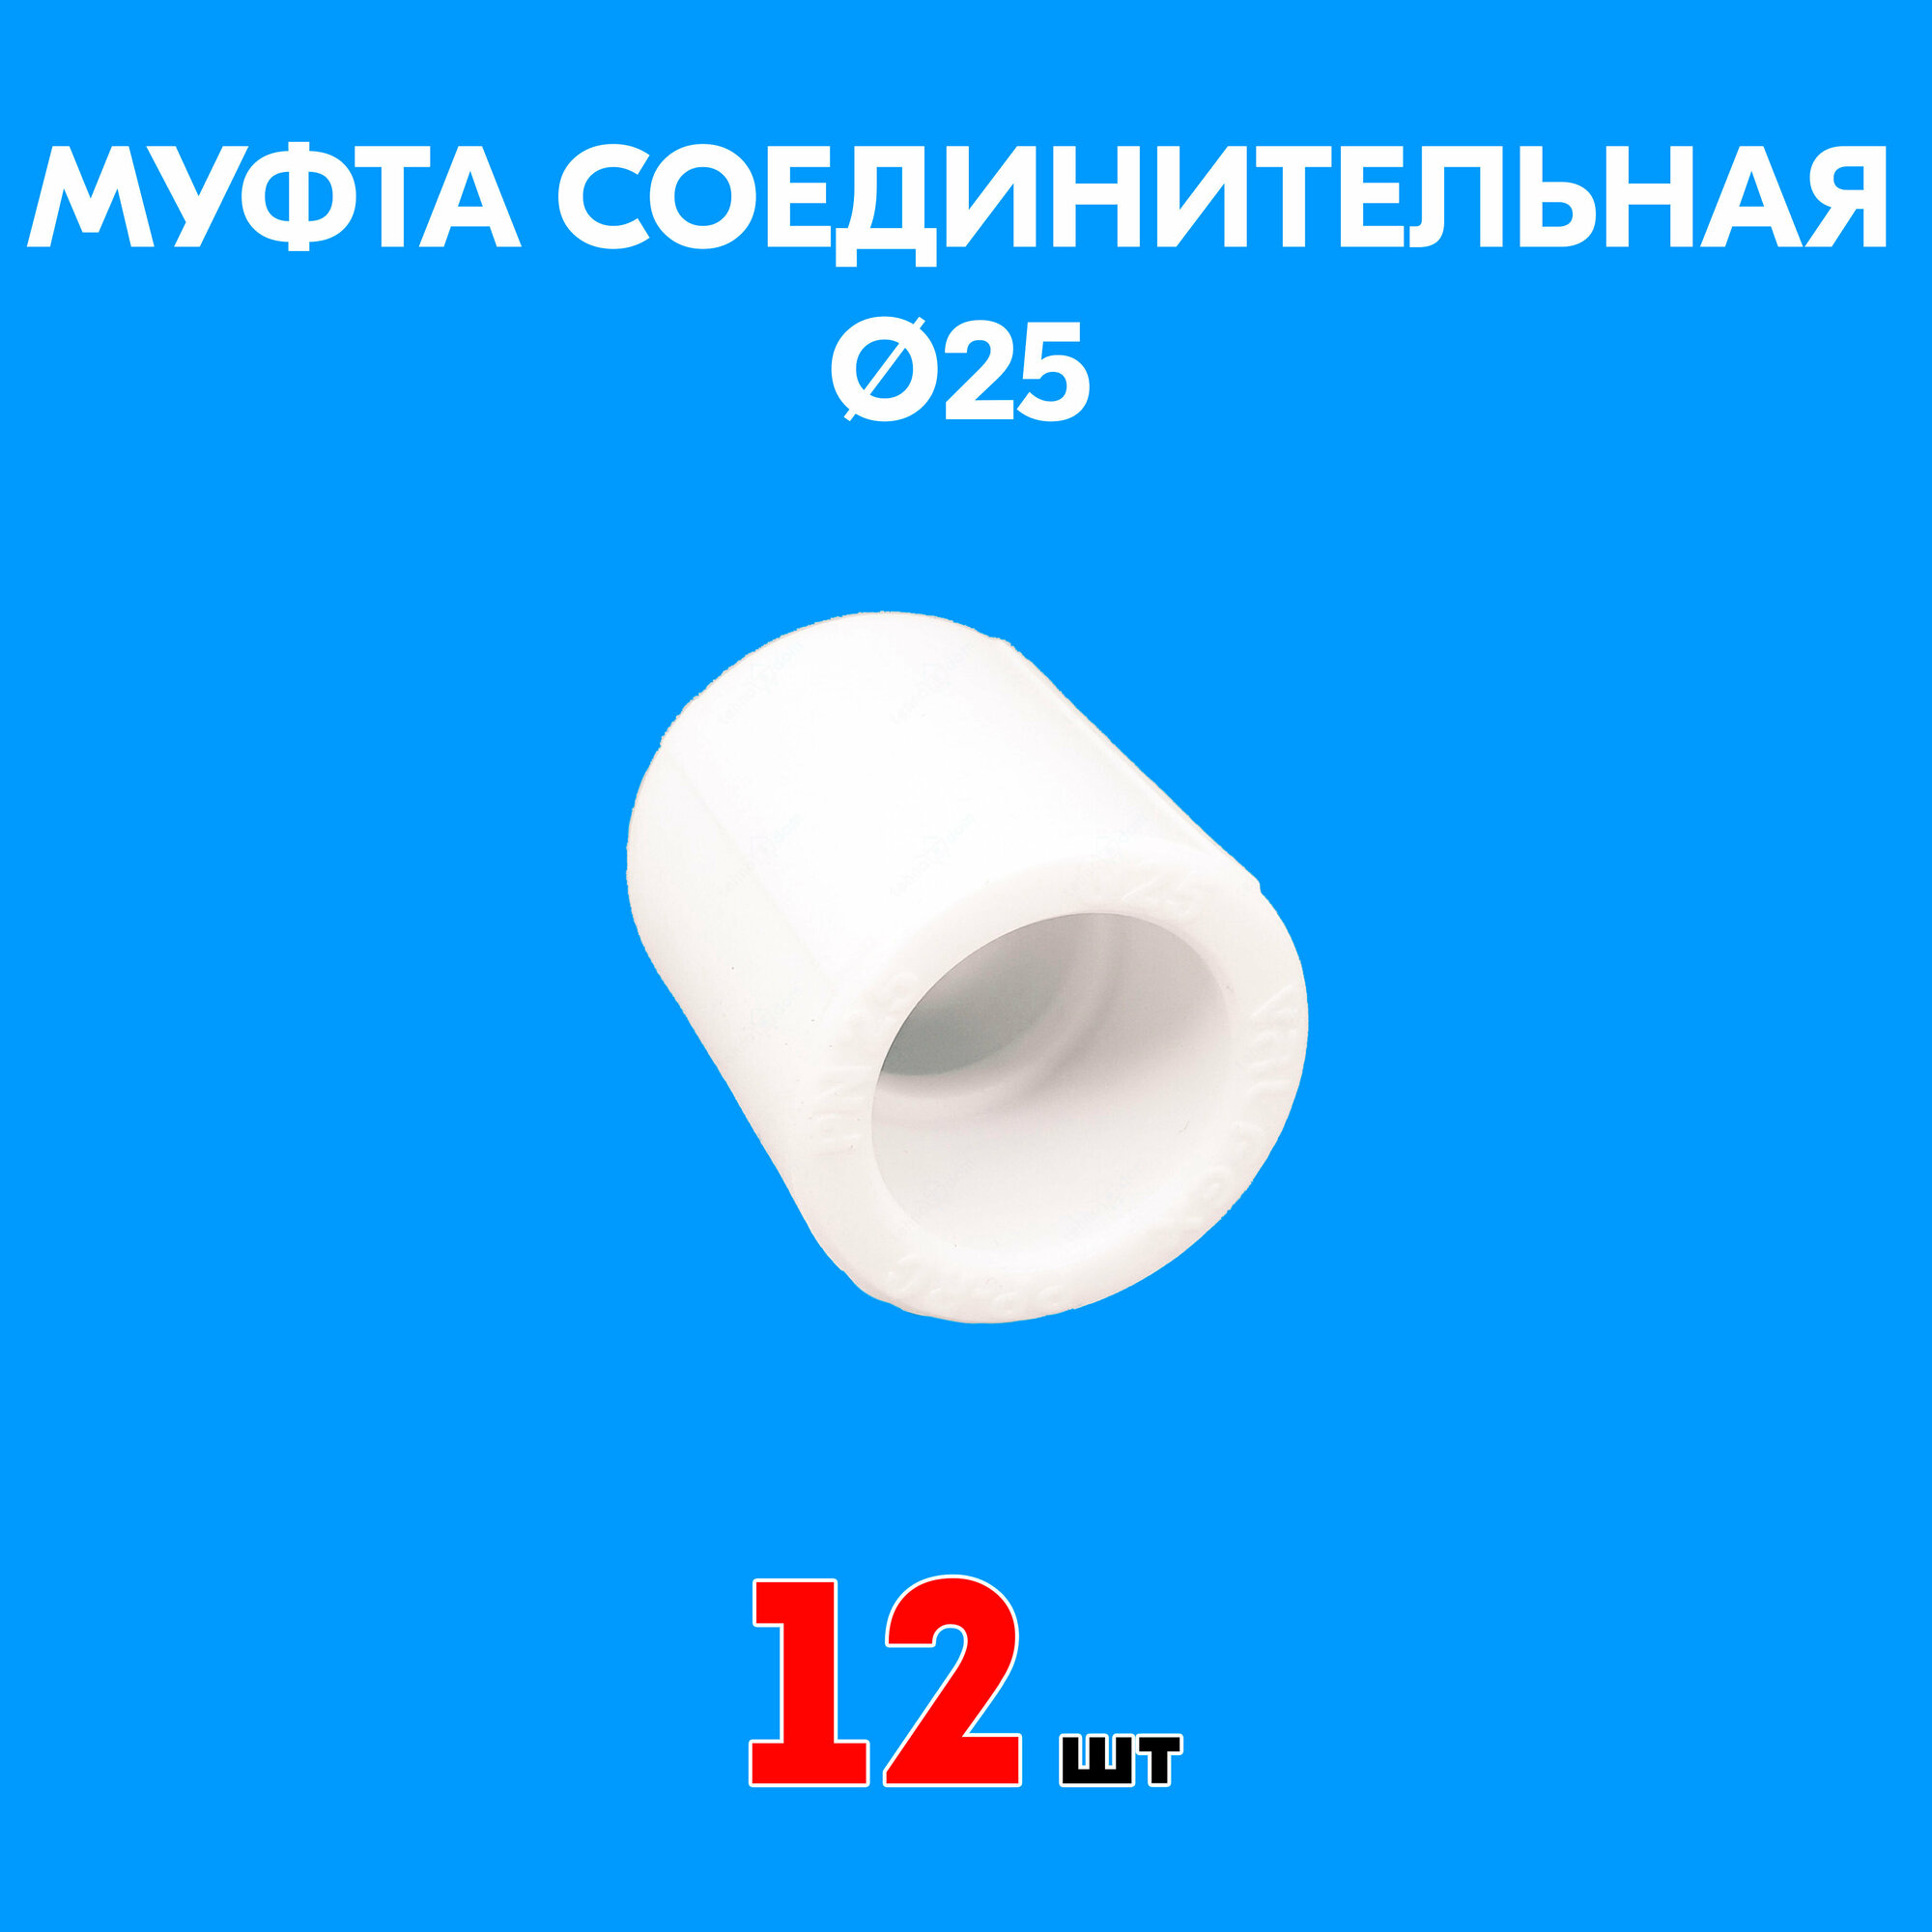 Муфта полипропиленовая соединительная 25 (12 шт)